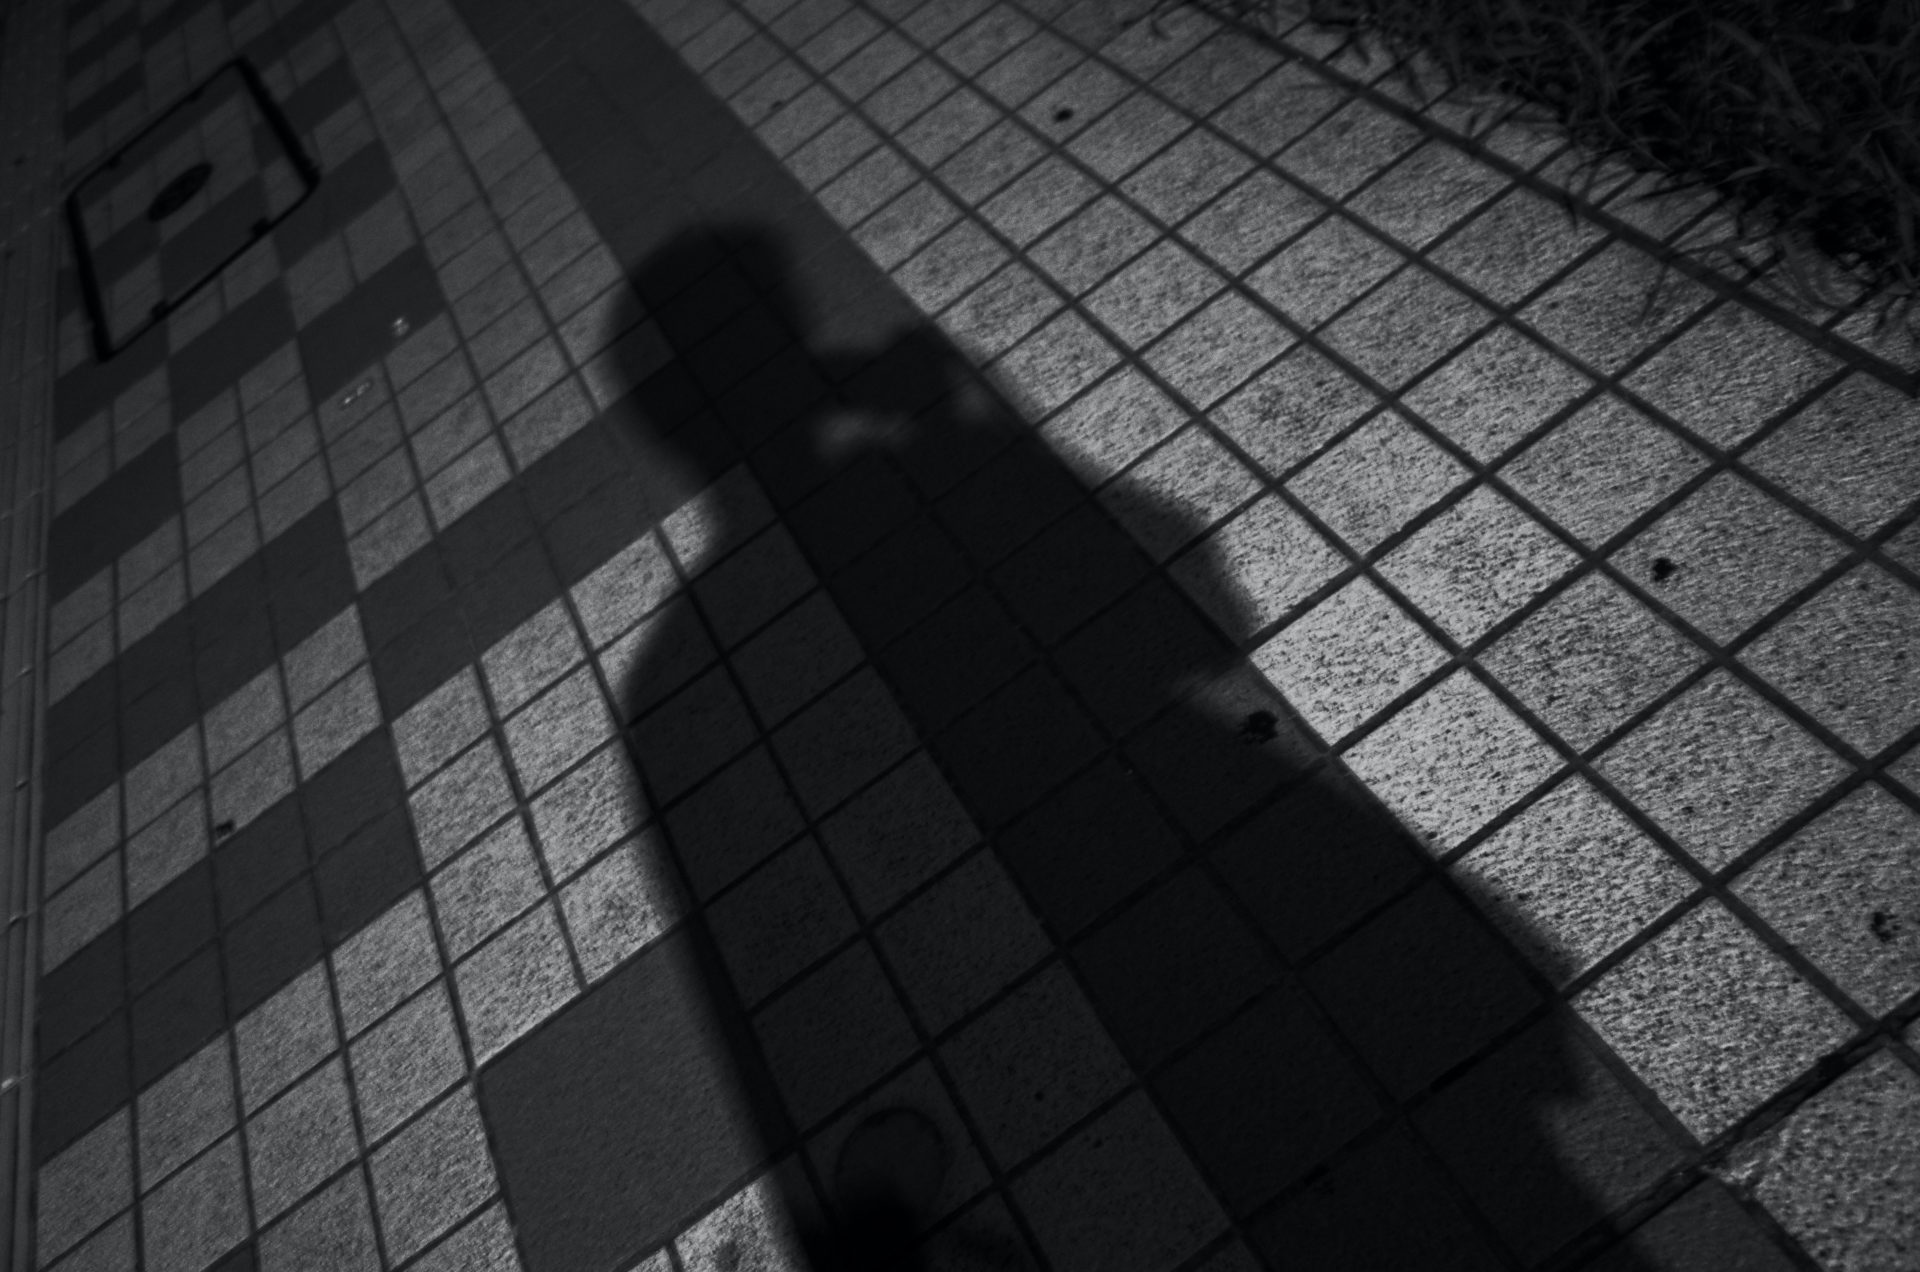 Schatten einer Person mit Handy in der Hand.